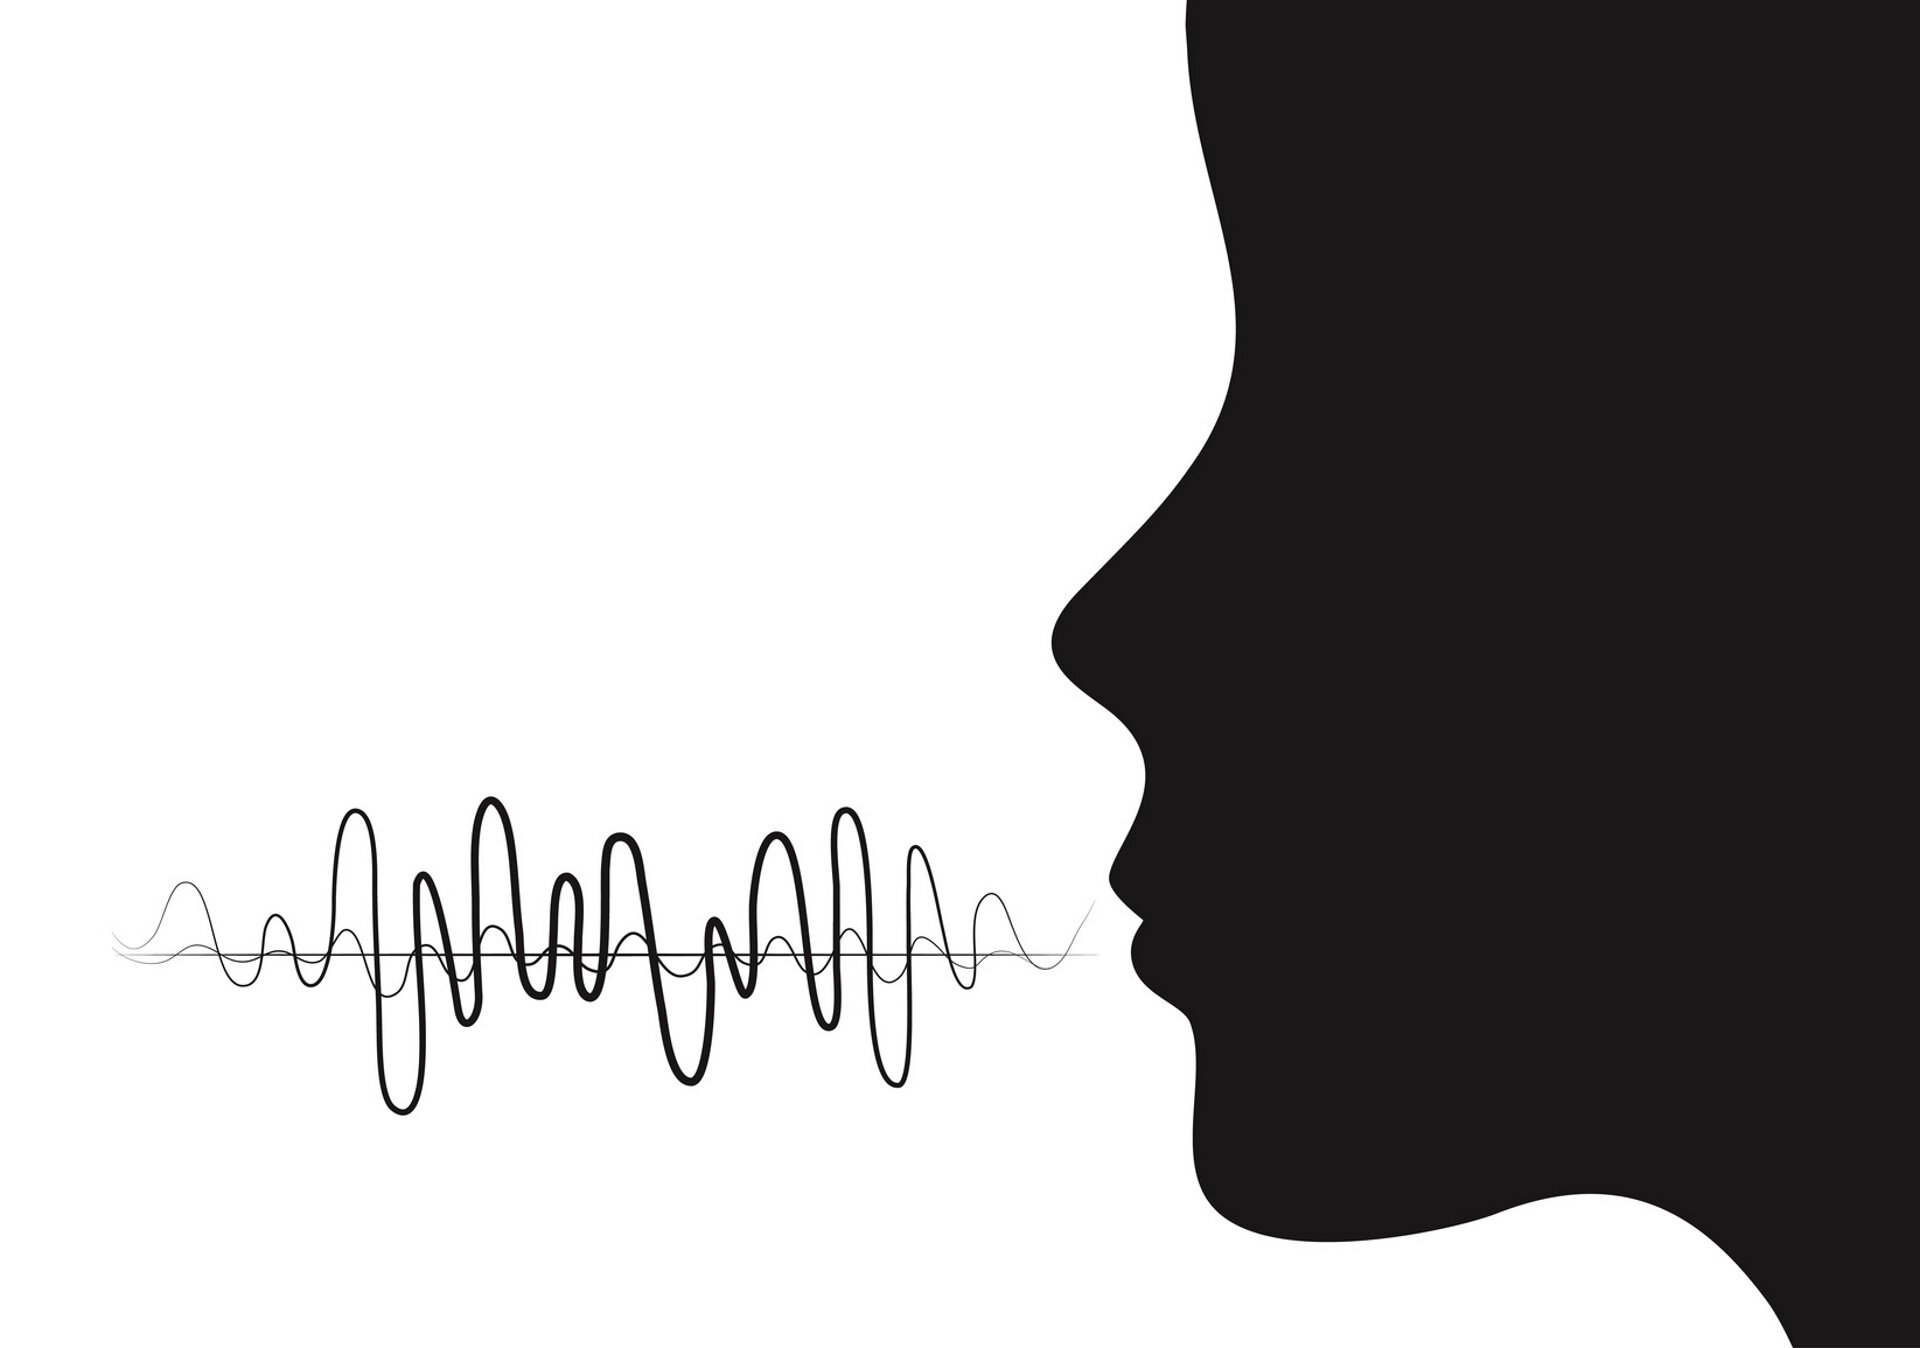 Fotografia przedstawia ikonę twarzy oraz falę dźwiękową wymowy głosu ludzkiego.